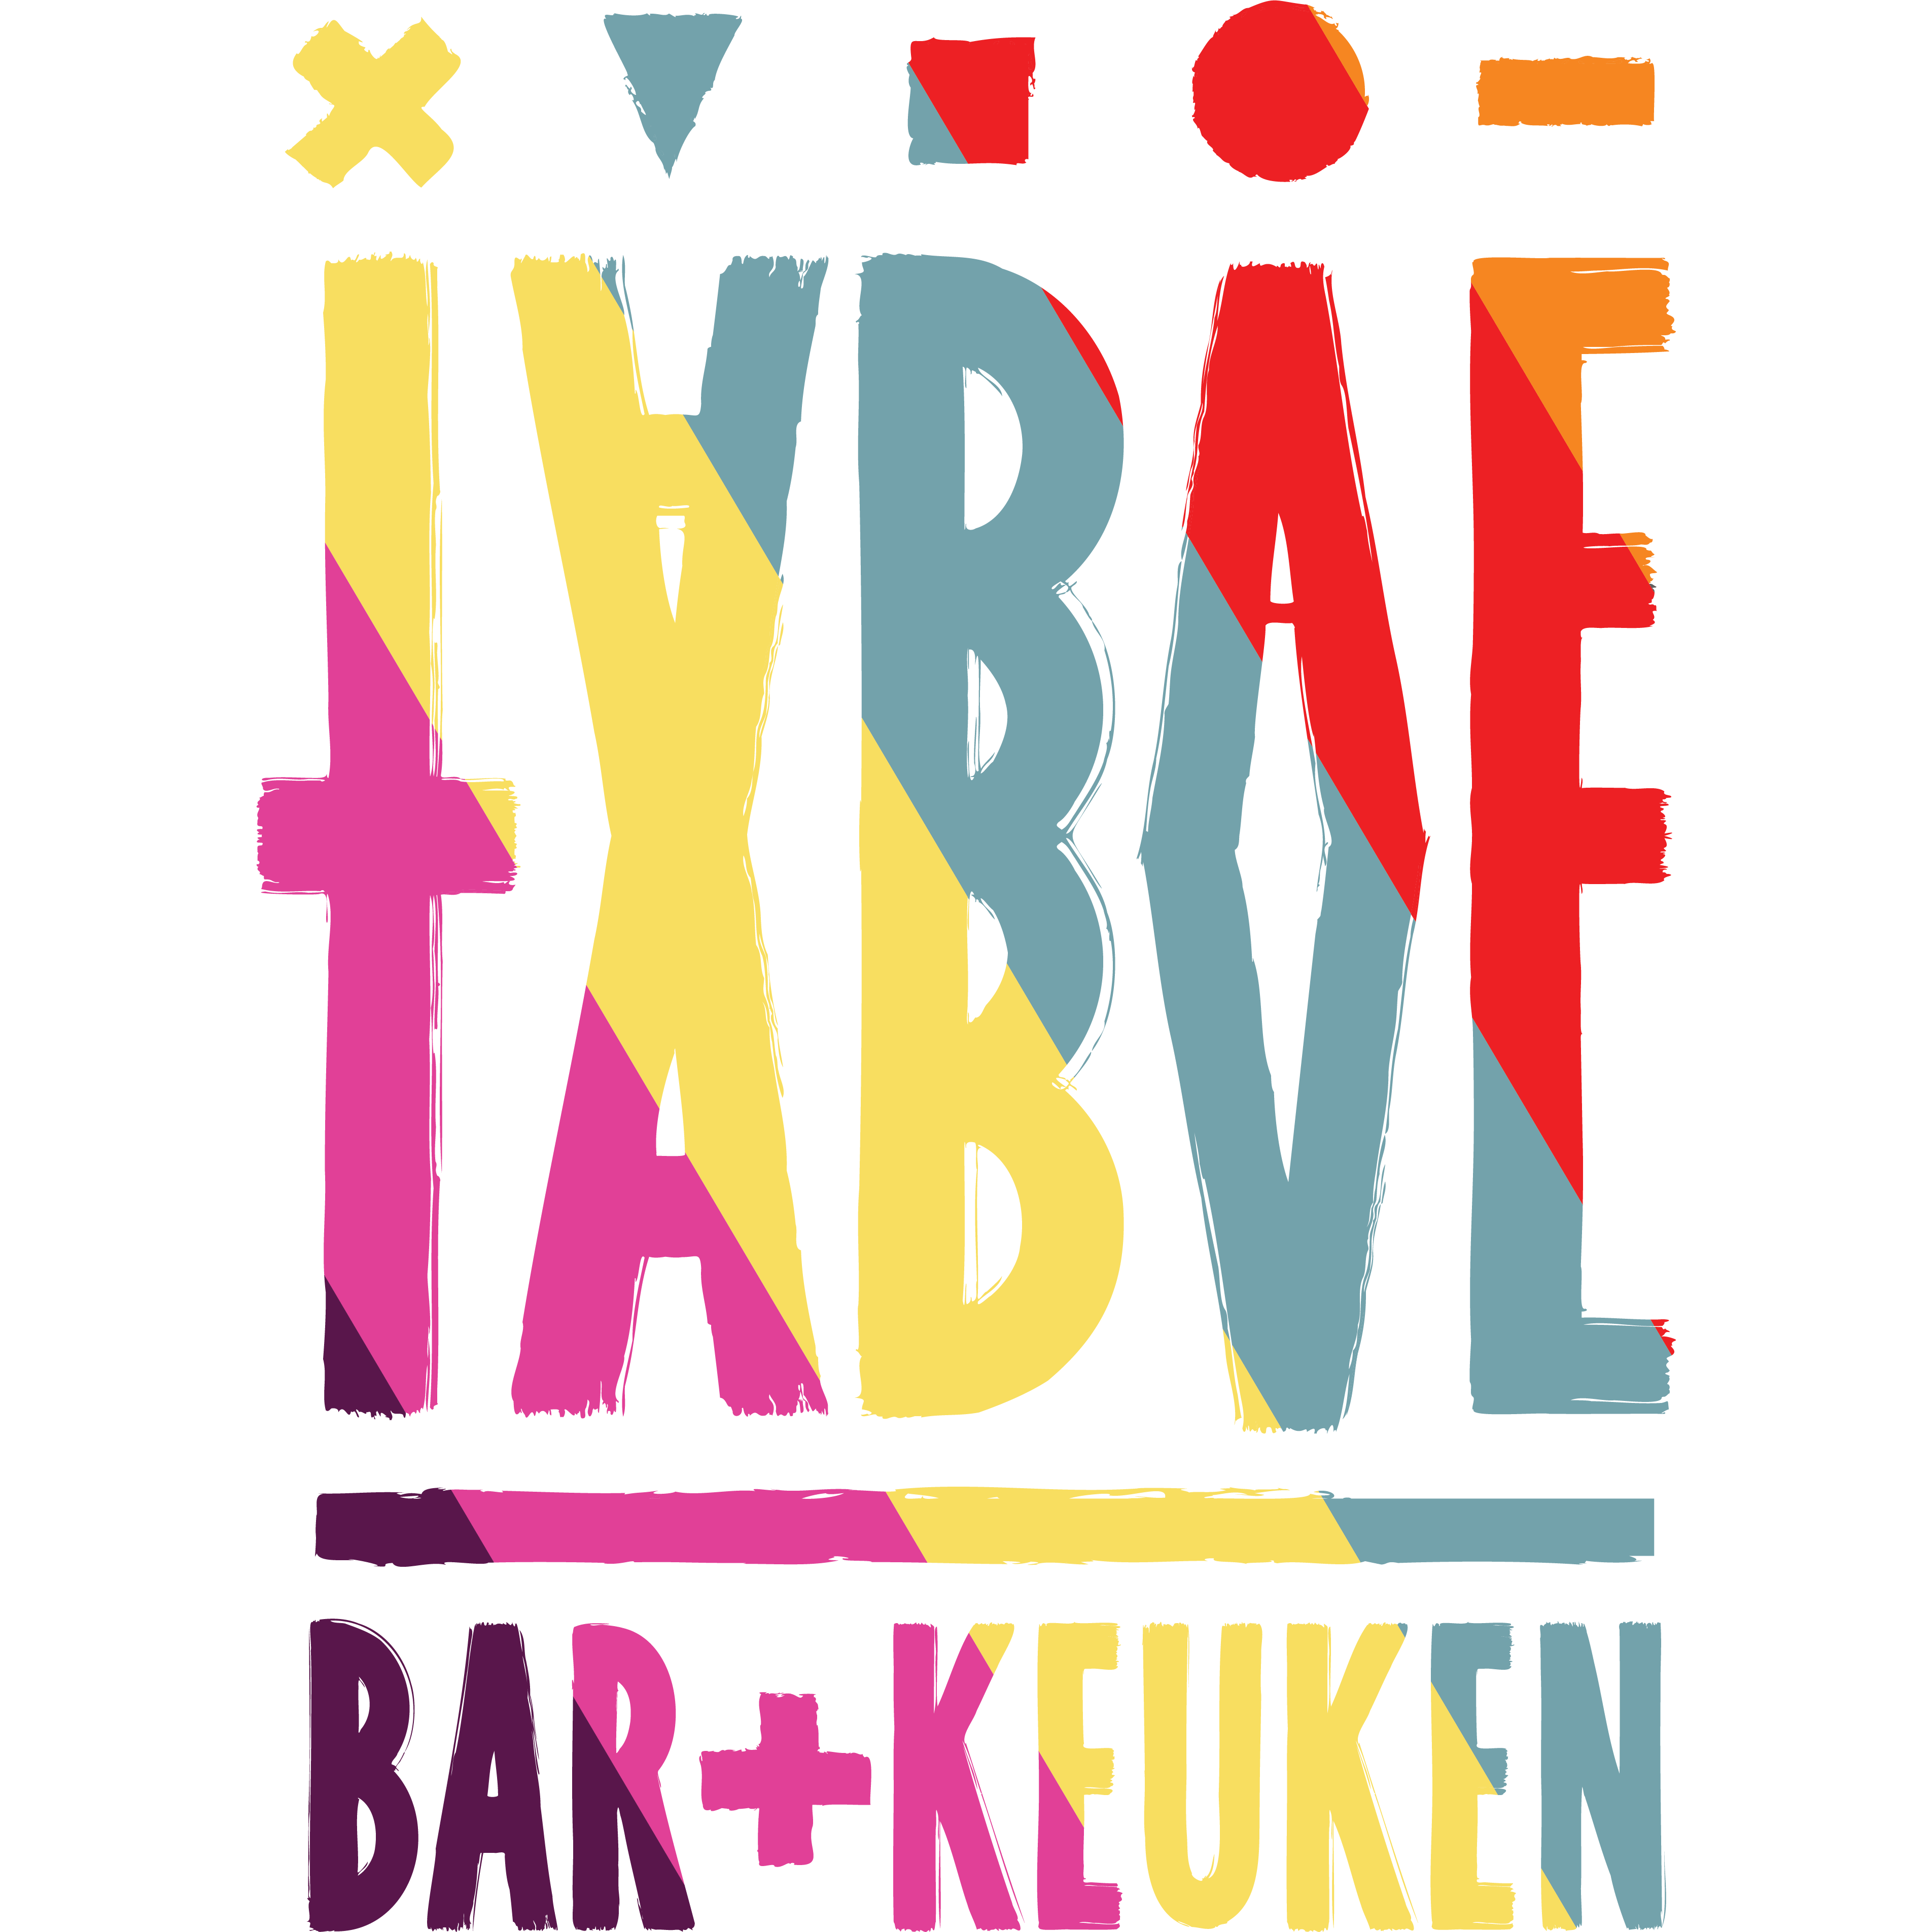 Taboe Bar & Keuken - Restaurant - Zwolle - 038 852 0780 Netherlands | ShowMeLocal.com